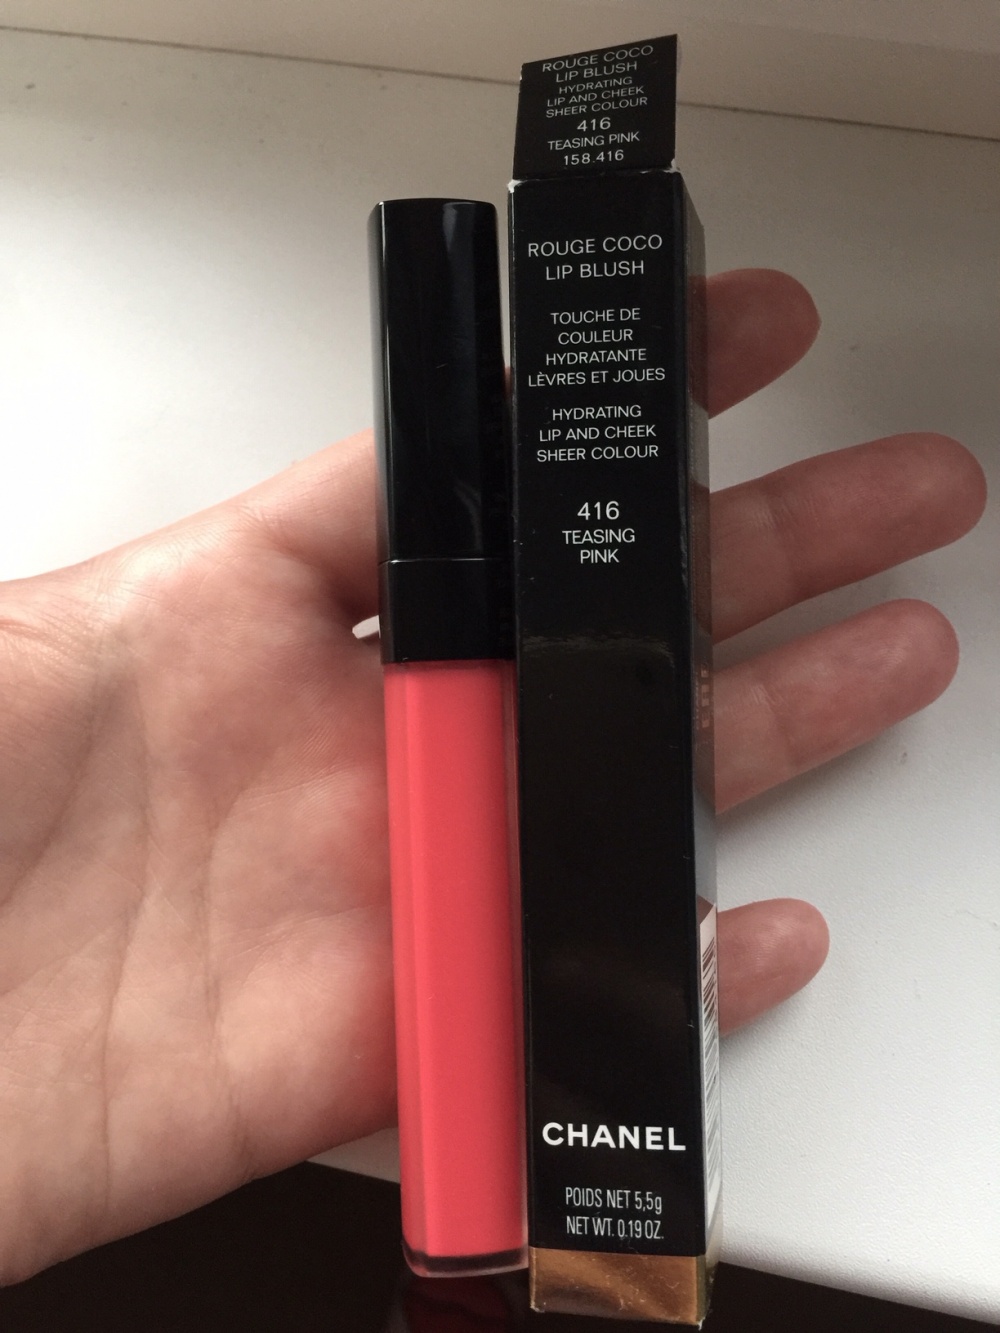 Матовая увлажняющая помада Chanel 416 , Dior карандаш для бровей 01 , тени Loreal